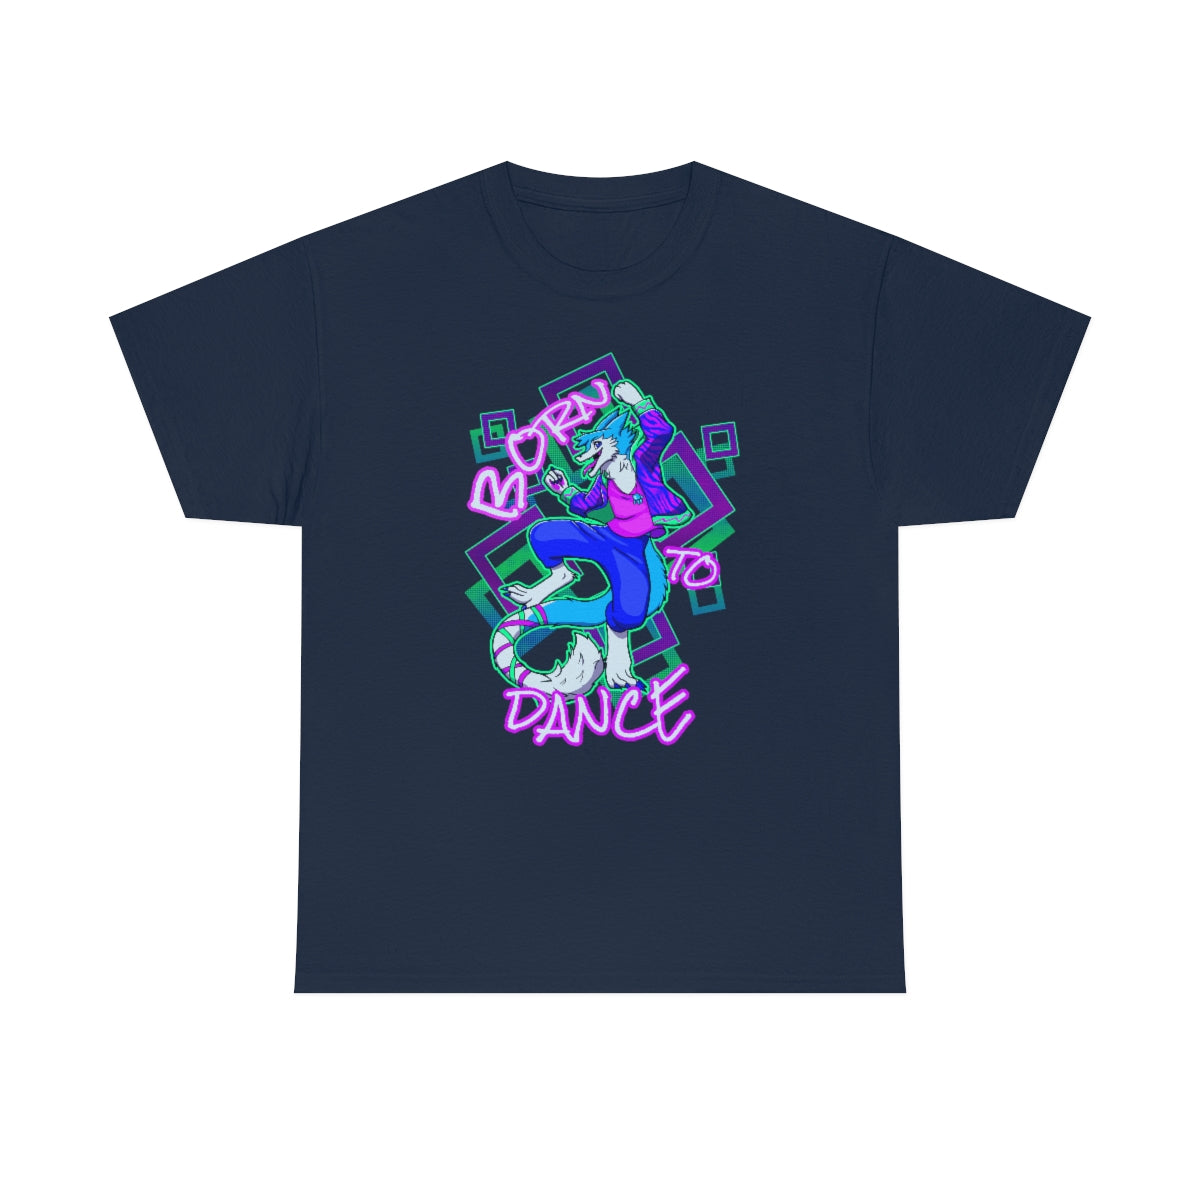 Born to Dance - T-Shirt T-Shirt Artworktee Navy Blue S 